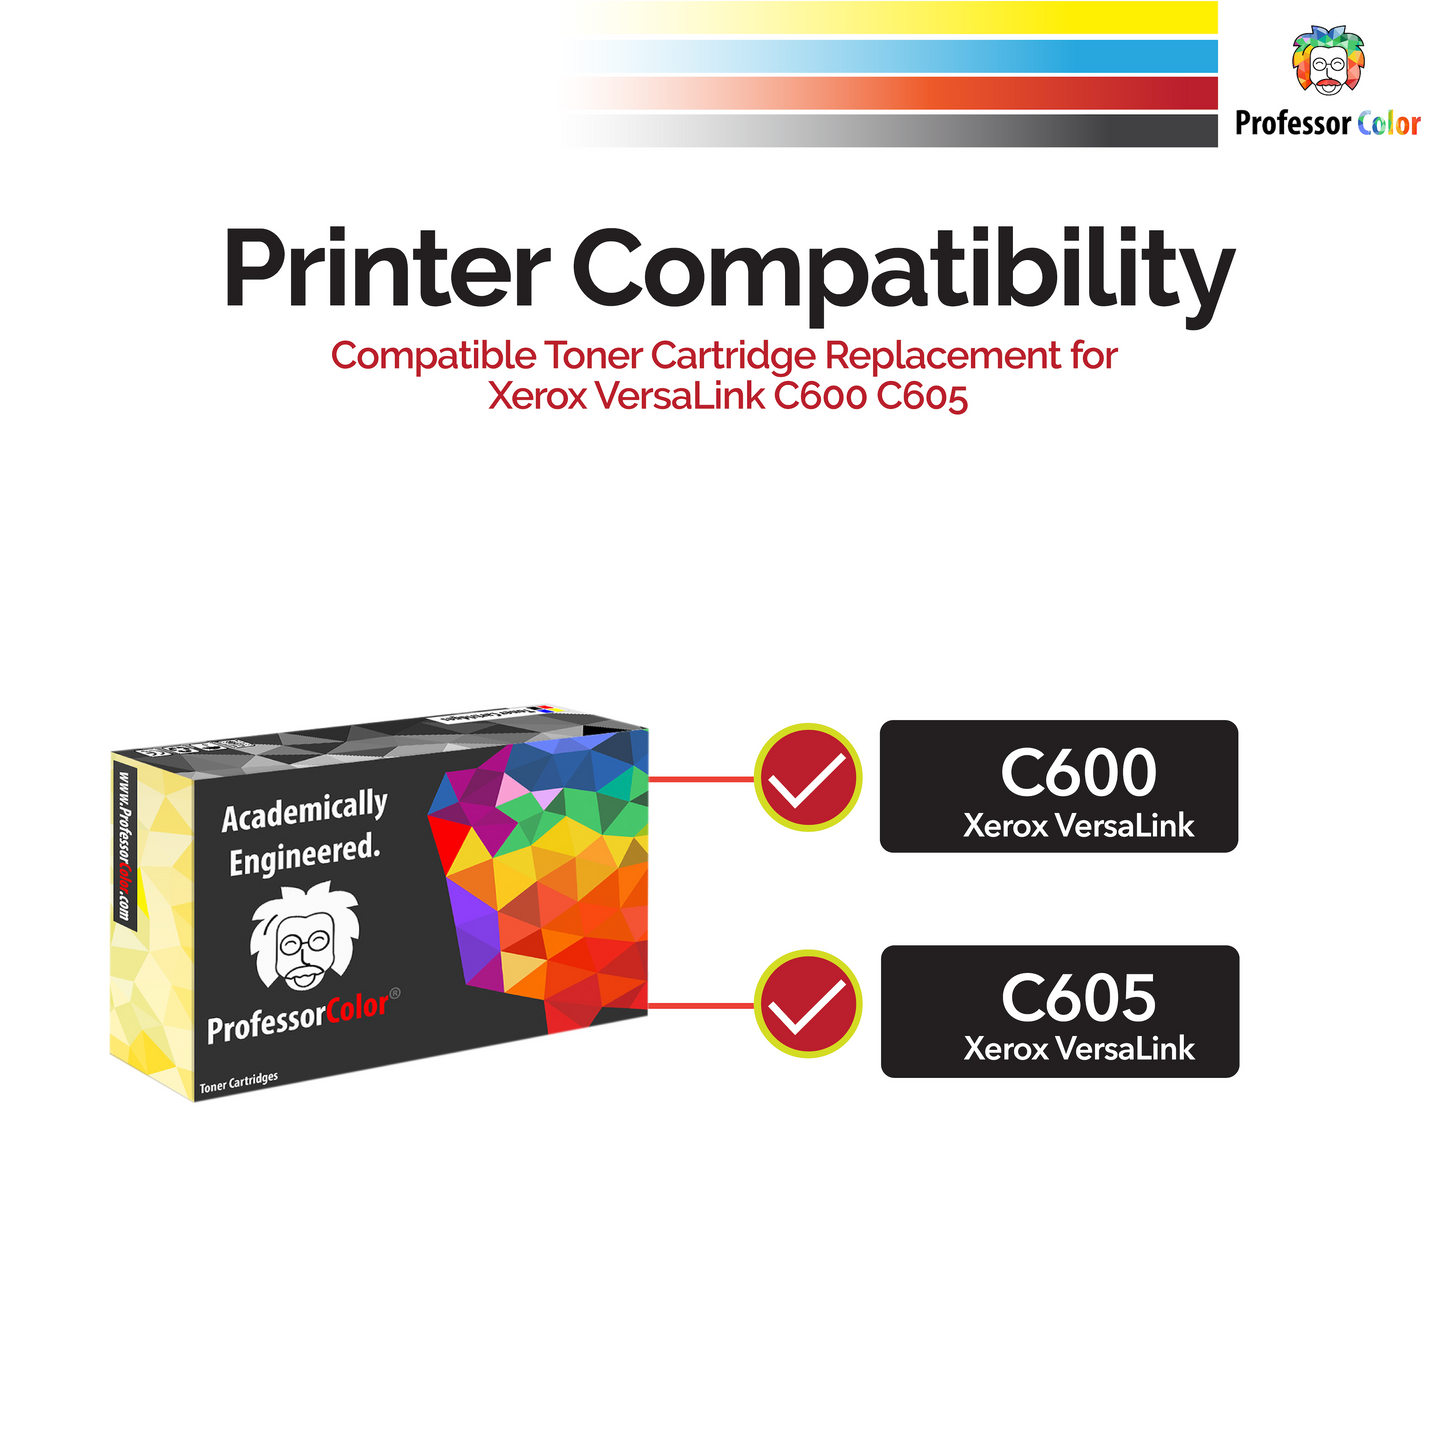 Professor Color Compatible Toner Cartridge Replacement for Xerox VersaLink C600 C605 106R03901 - Magenta - Professor Color